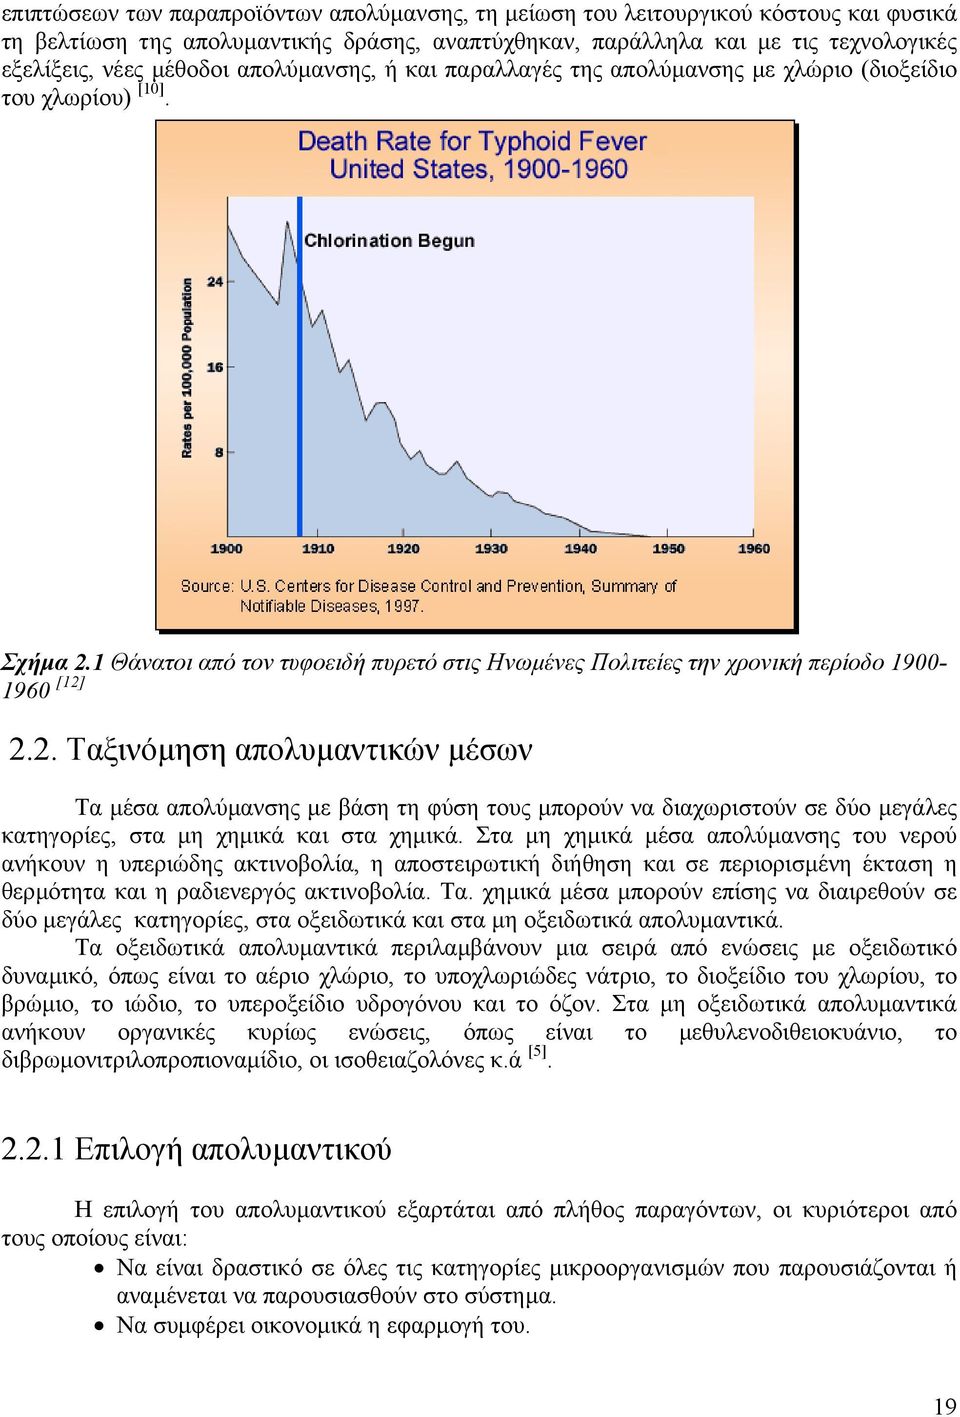 1 Θάνατοι από τον τυφοειδή πυρετό στις Ηνωµένες Πολιτείες την χρονική περίοδο 1900-1960 [12]